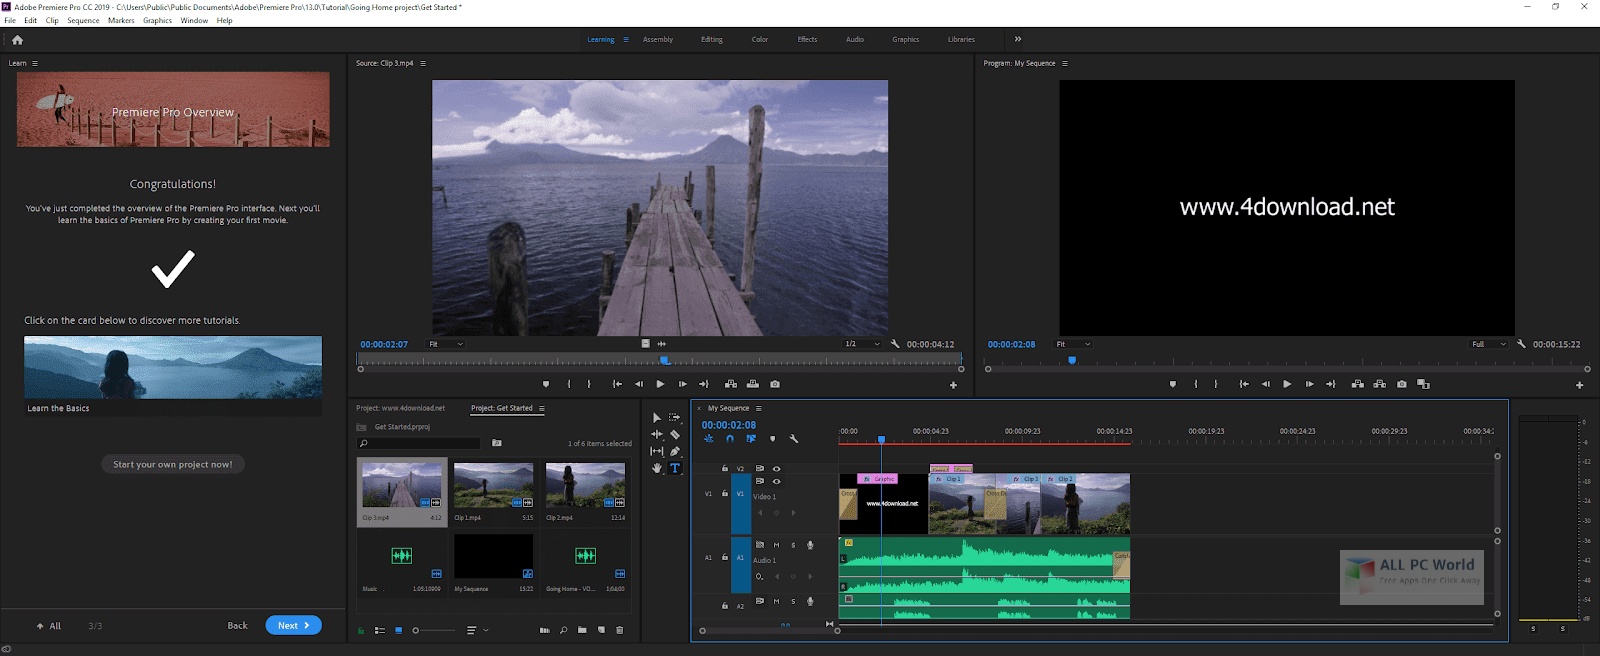 Adobe Premiere Pro CC 2020 v14.1 Free Download   ALL PC World